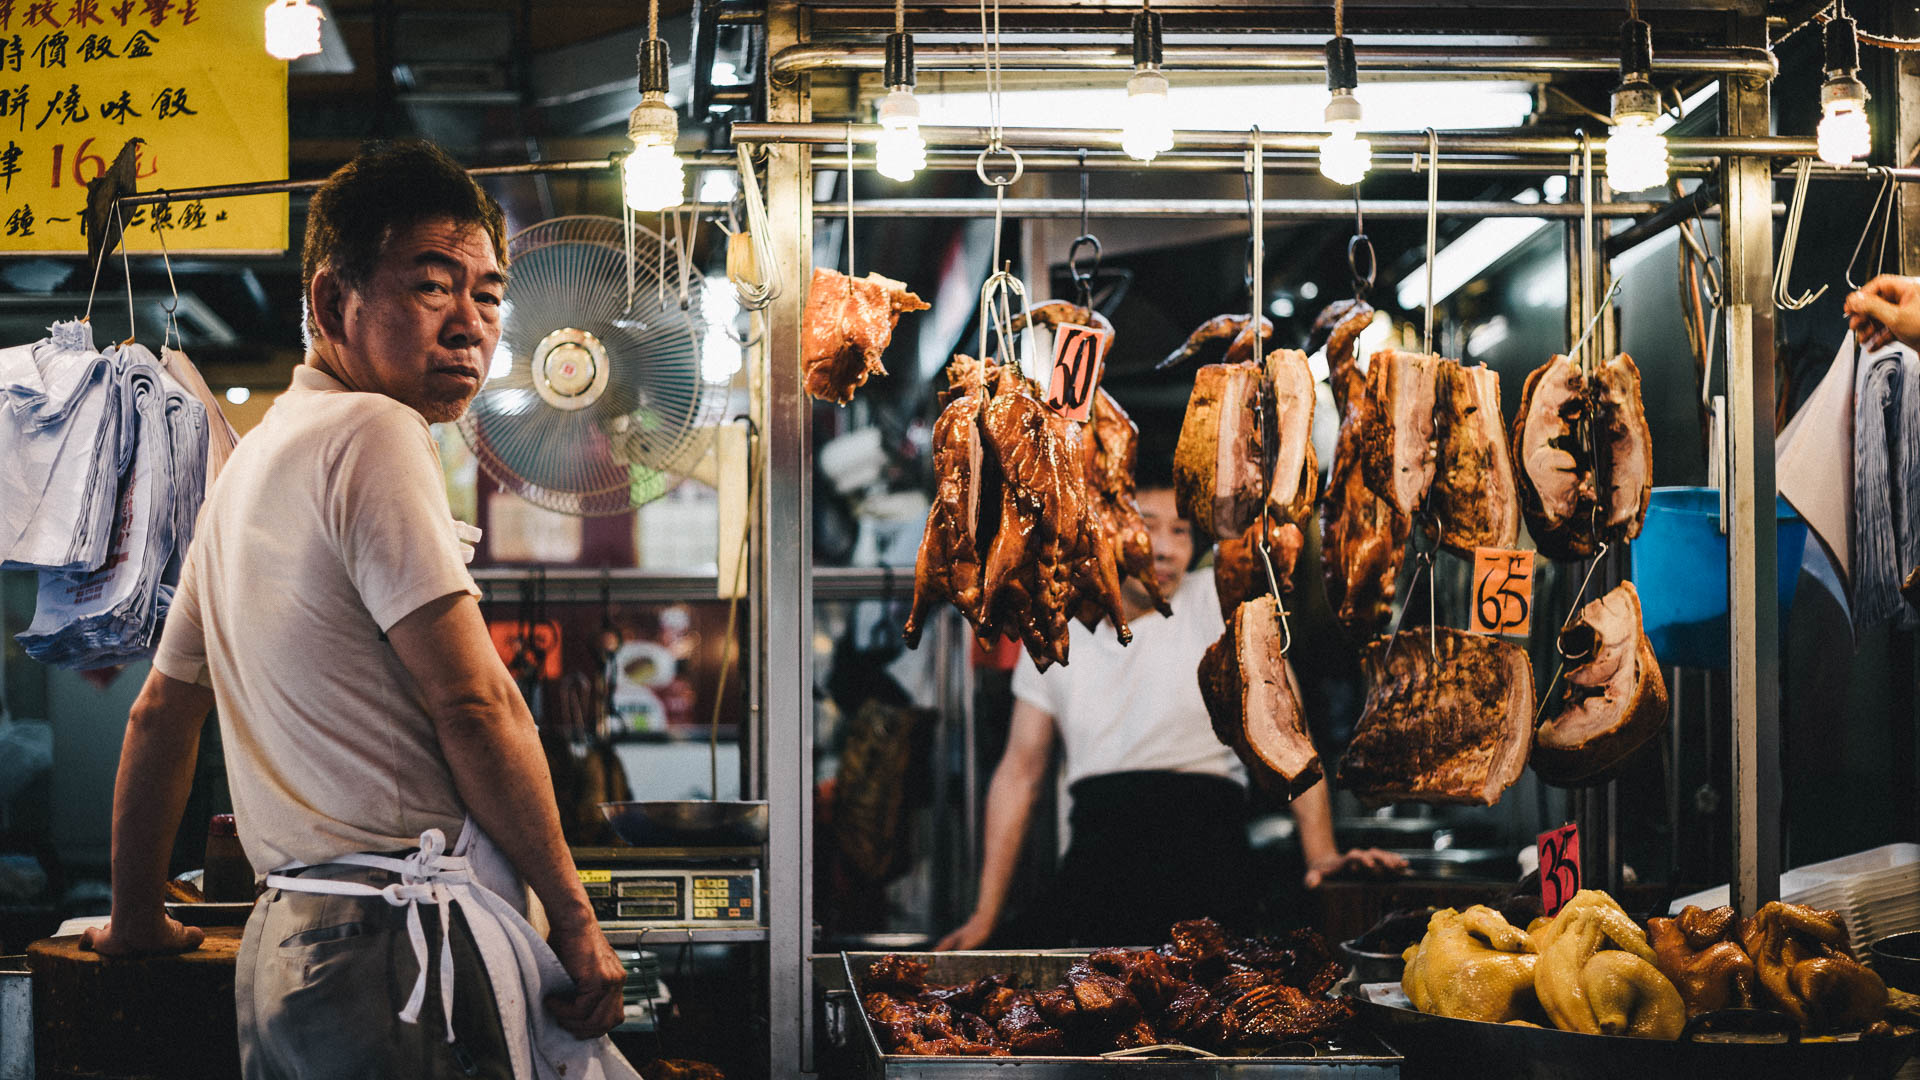 Food Stall in Market / Kwun Tong, Hong Kong